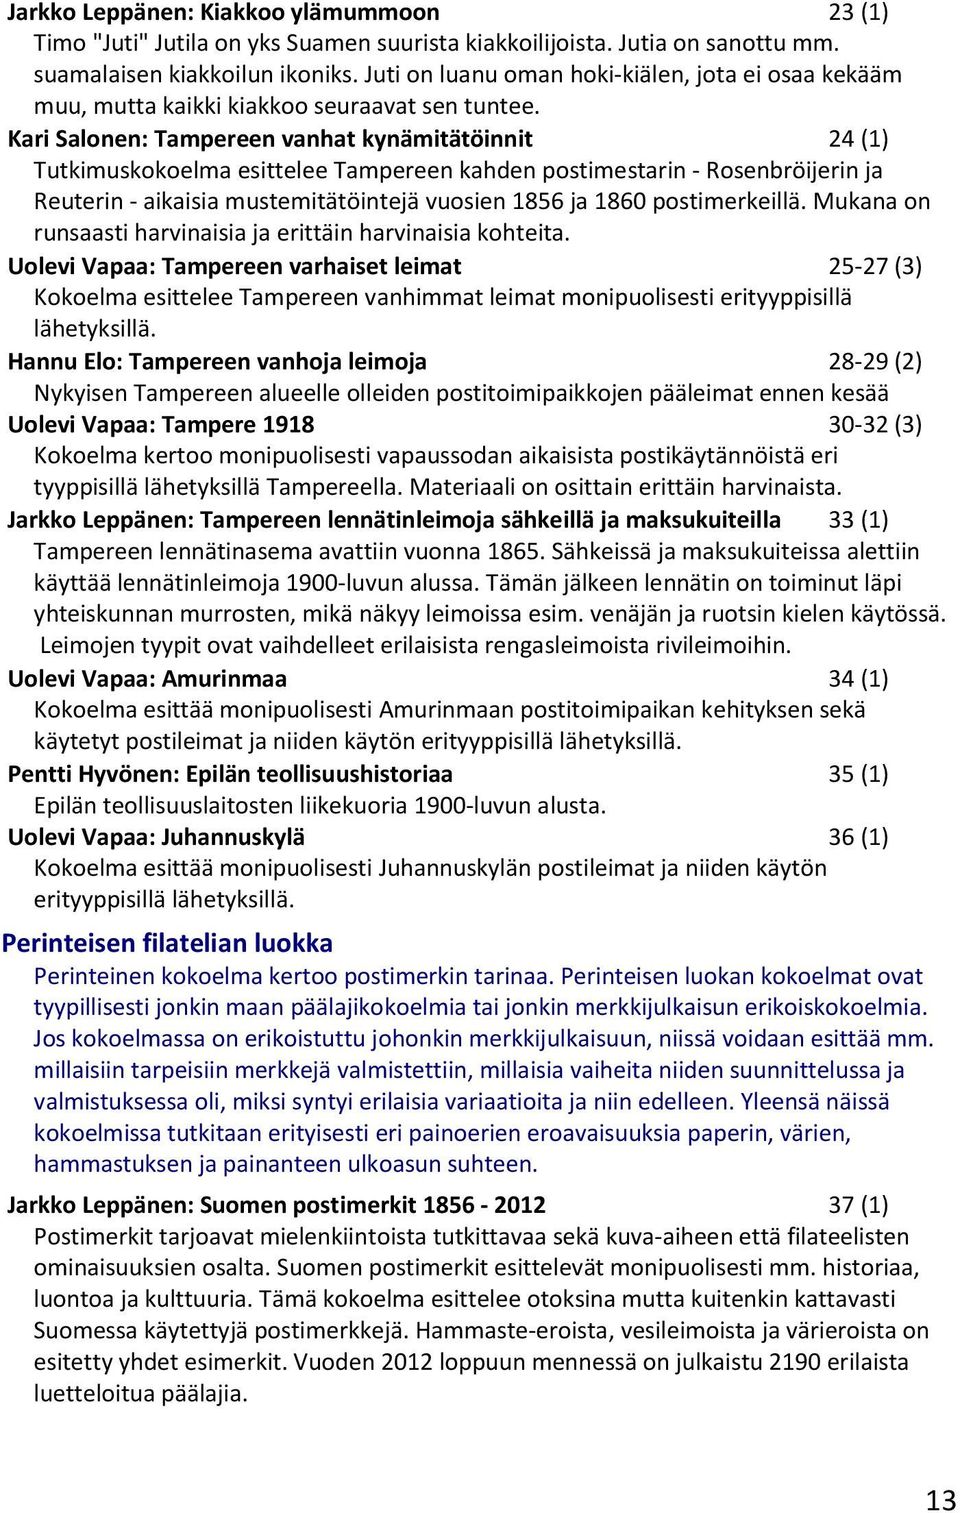 Kari Salonen: Tampereen vanhat kynämitätöinnit 24 (1) Tutkimuskokoelma esittelee Tampereen kahden postimestarin - Rosenbröijerin ja Reuterin - aikaisia mustemitätöintejä vuosien 1856 ja 1860